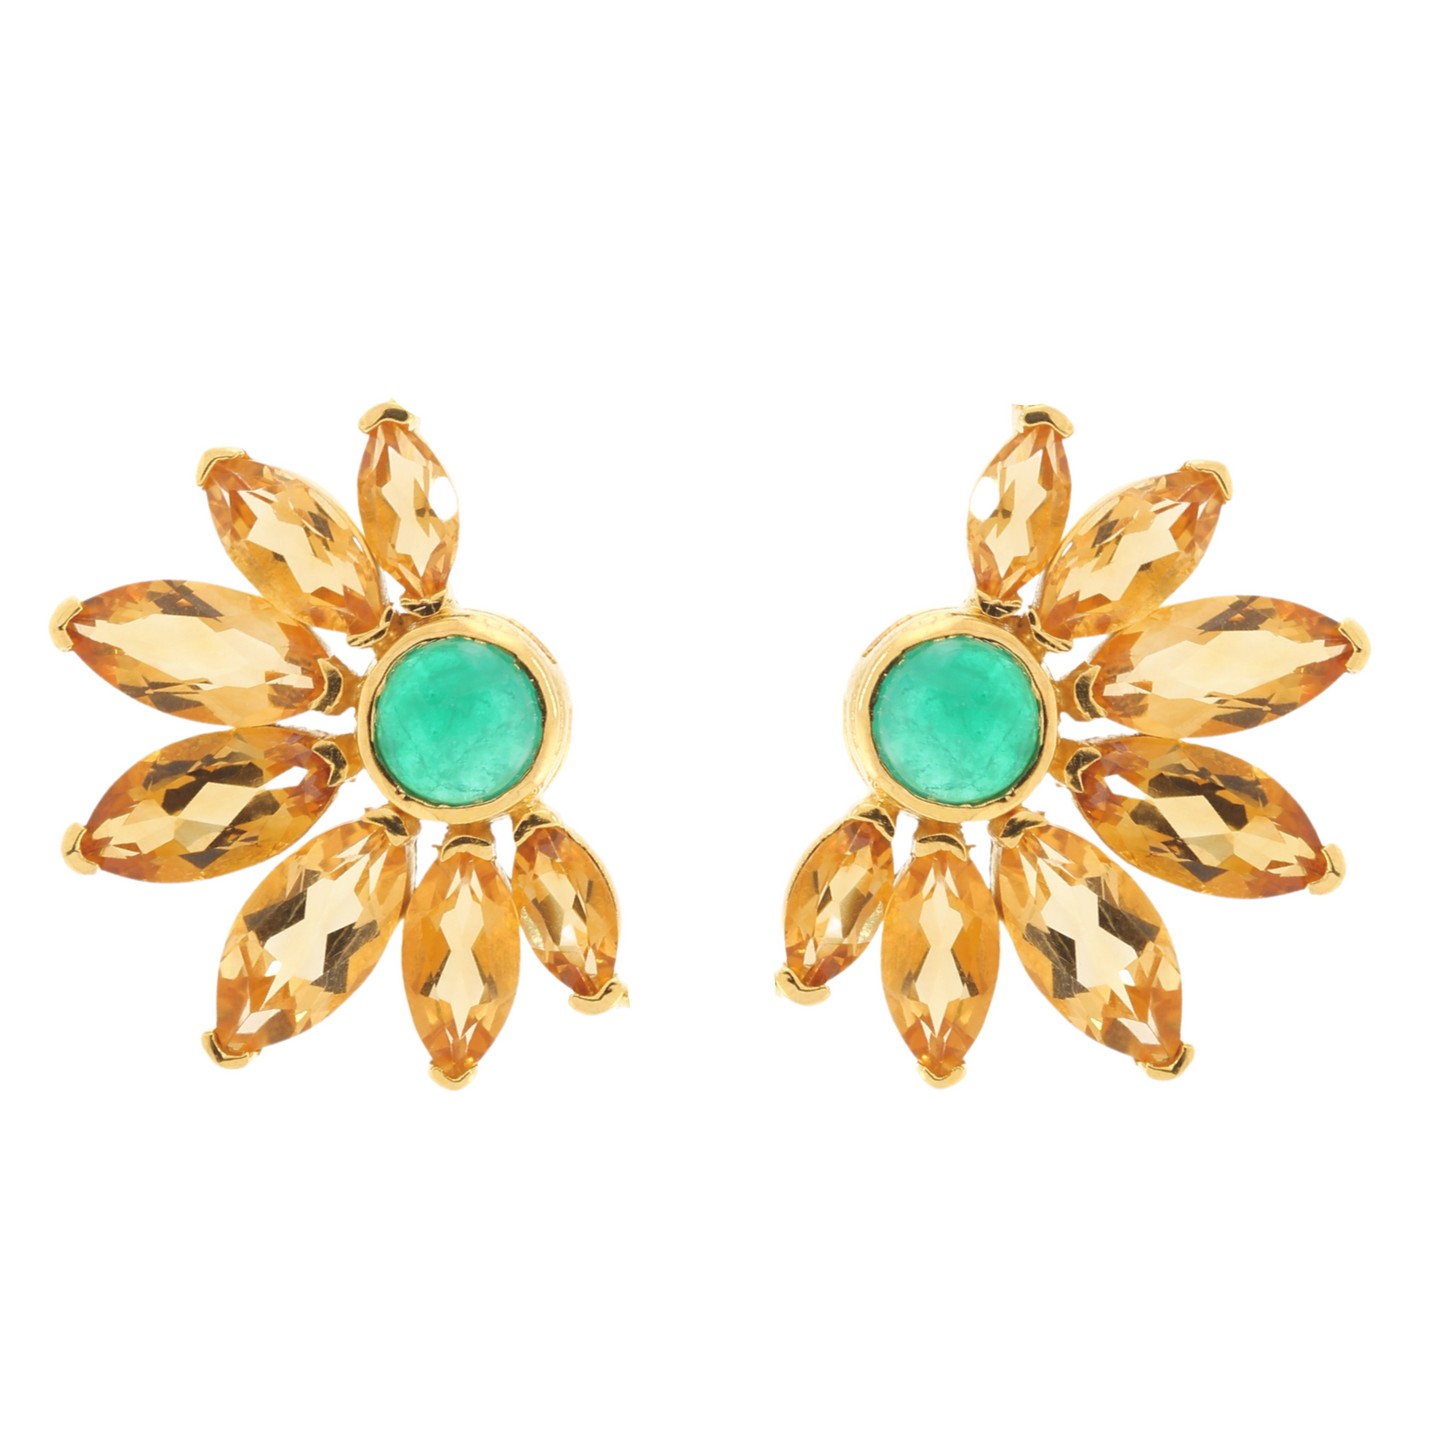 Russian sunflower earrings